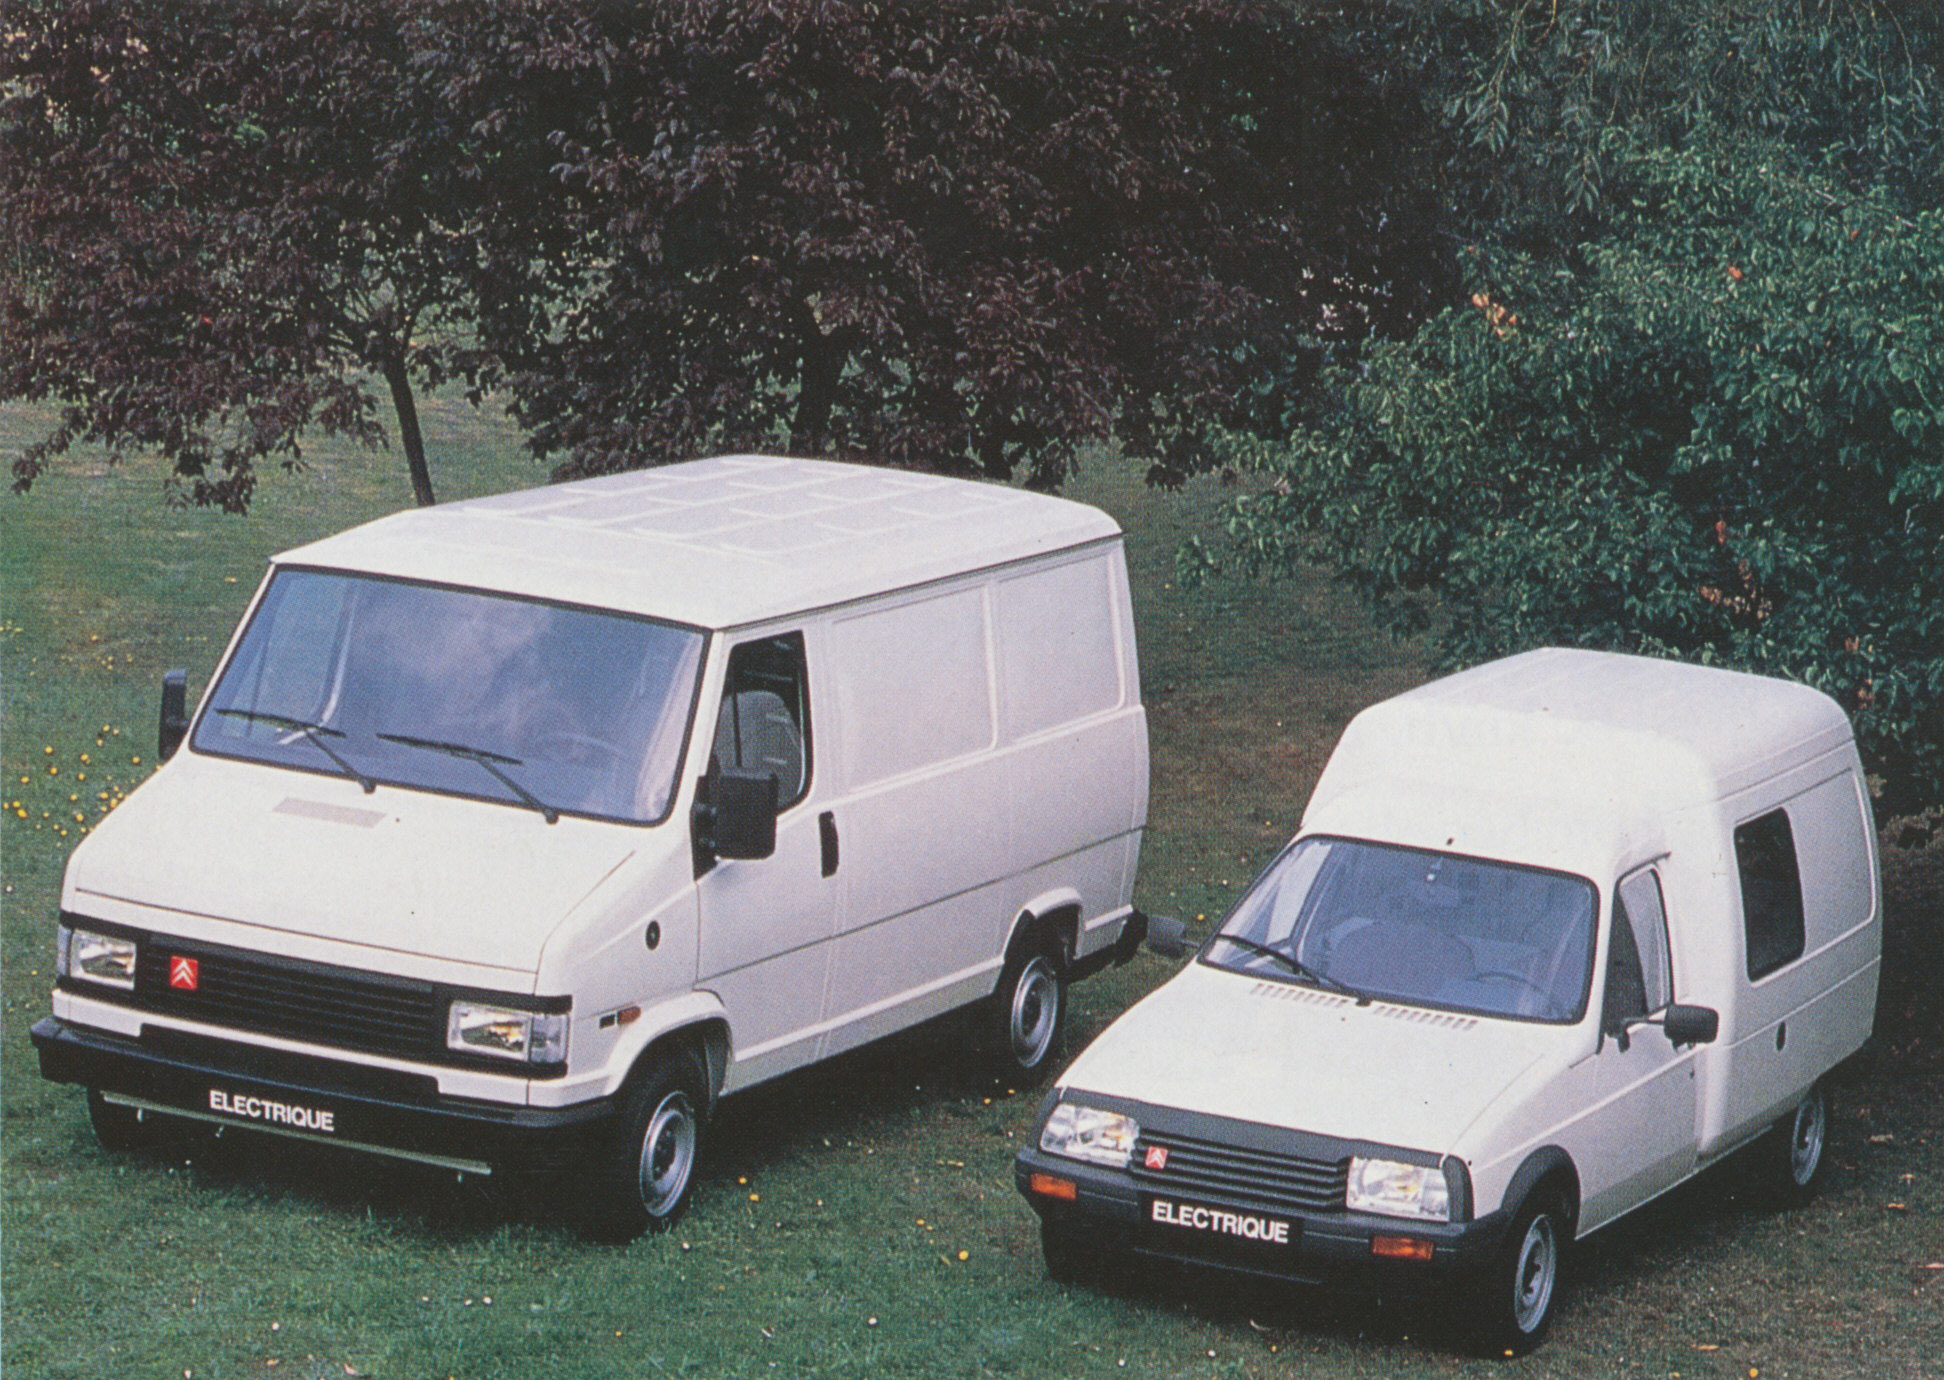 Citroën Testował Napęd Elektryczny W Samochodach Dostawczych Zanim Stało Się To Popularne. C15 I C25 Na Prąd – Francuskie.pl – Dziennik Motoryzacyjny